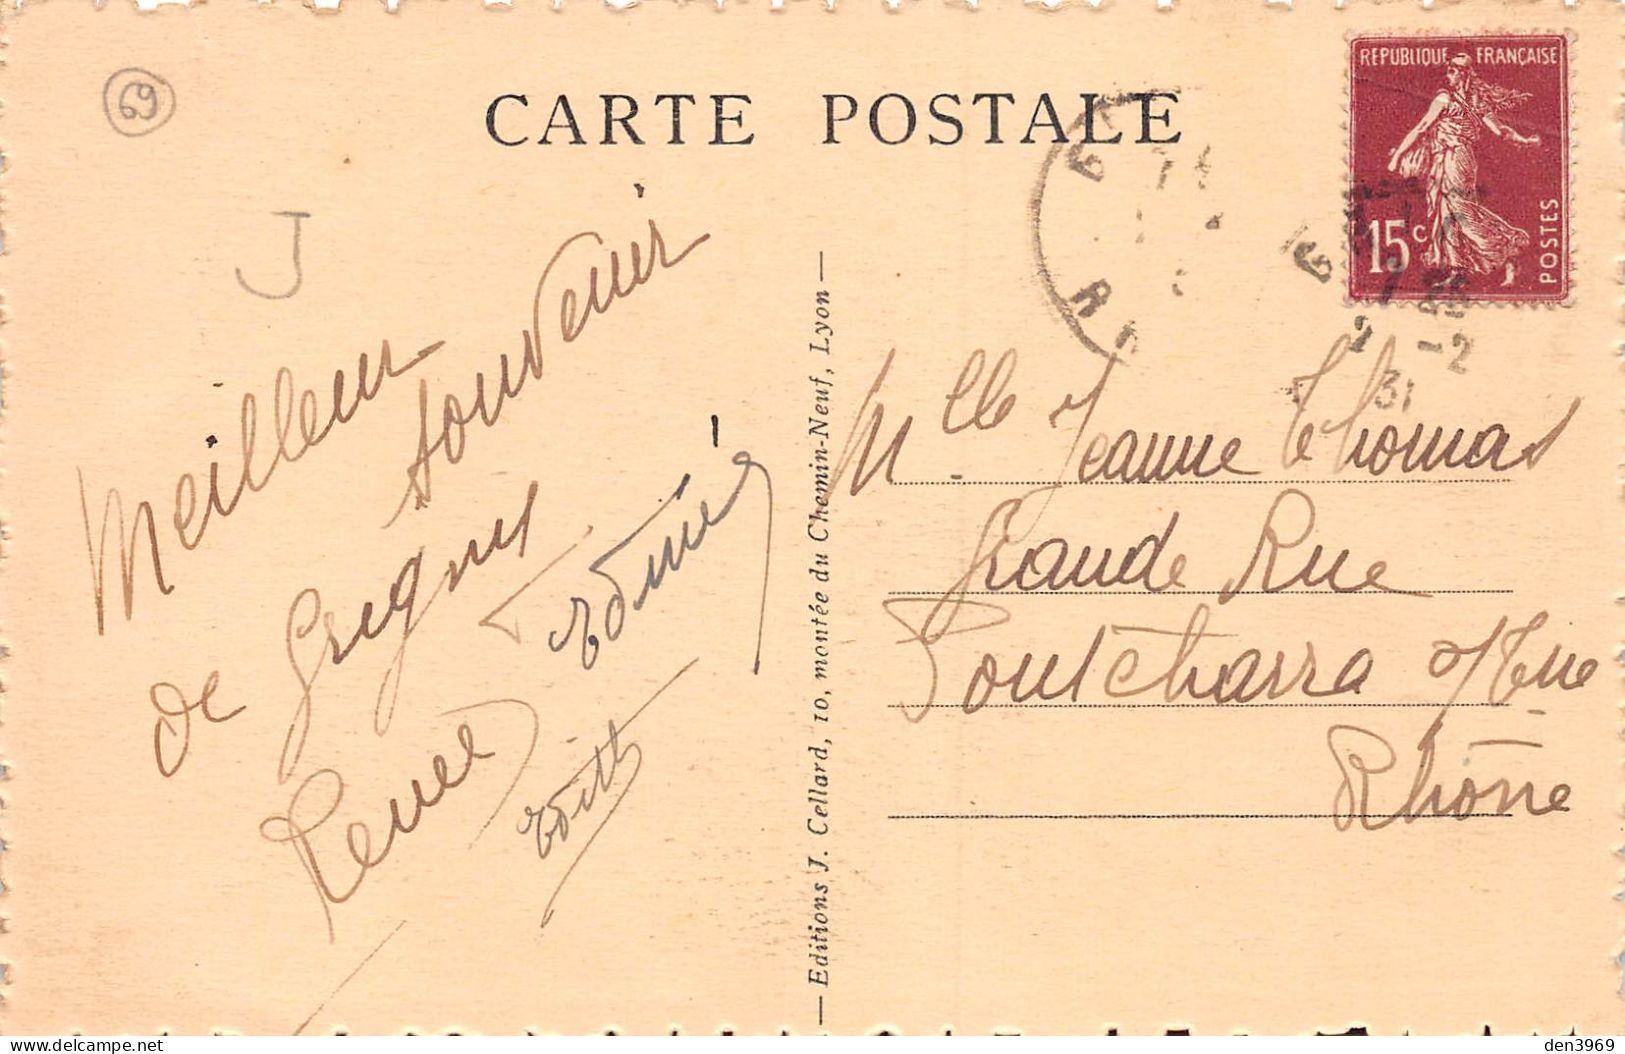 GRIGNY (Rhône) - La Poste - Voyagé 1931 (2 Scans) Jeanne Thomas, Grande Rue à Pontcharra-sur-Turdine - Grigny